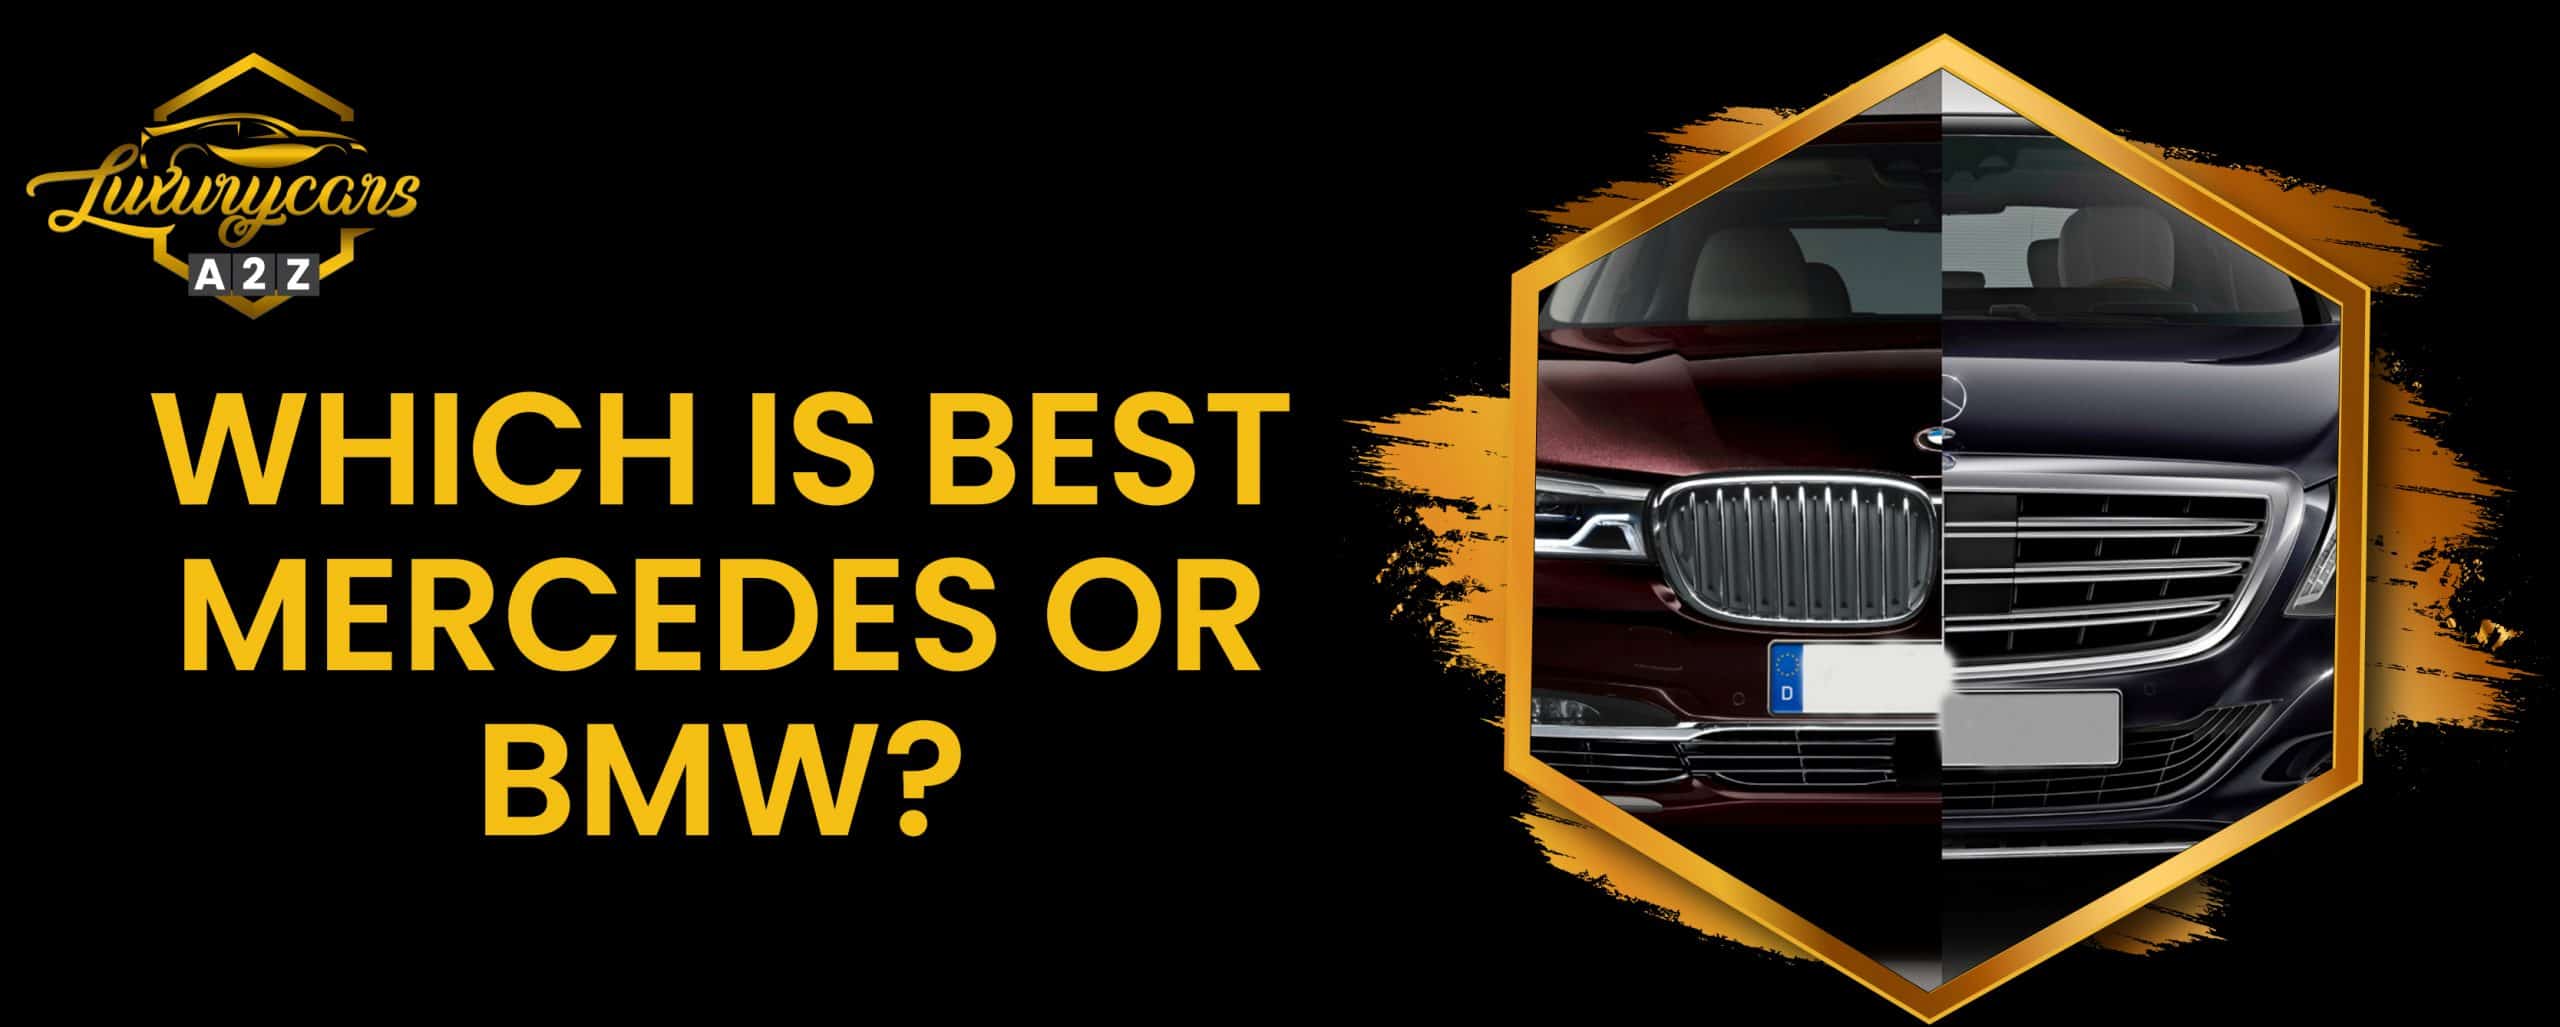 Qu'est-ce qui est le mieux, Mercedes ou BMW ?